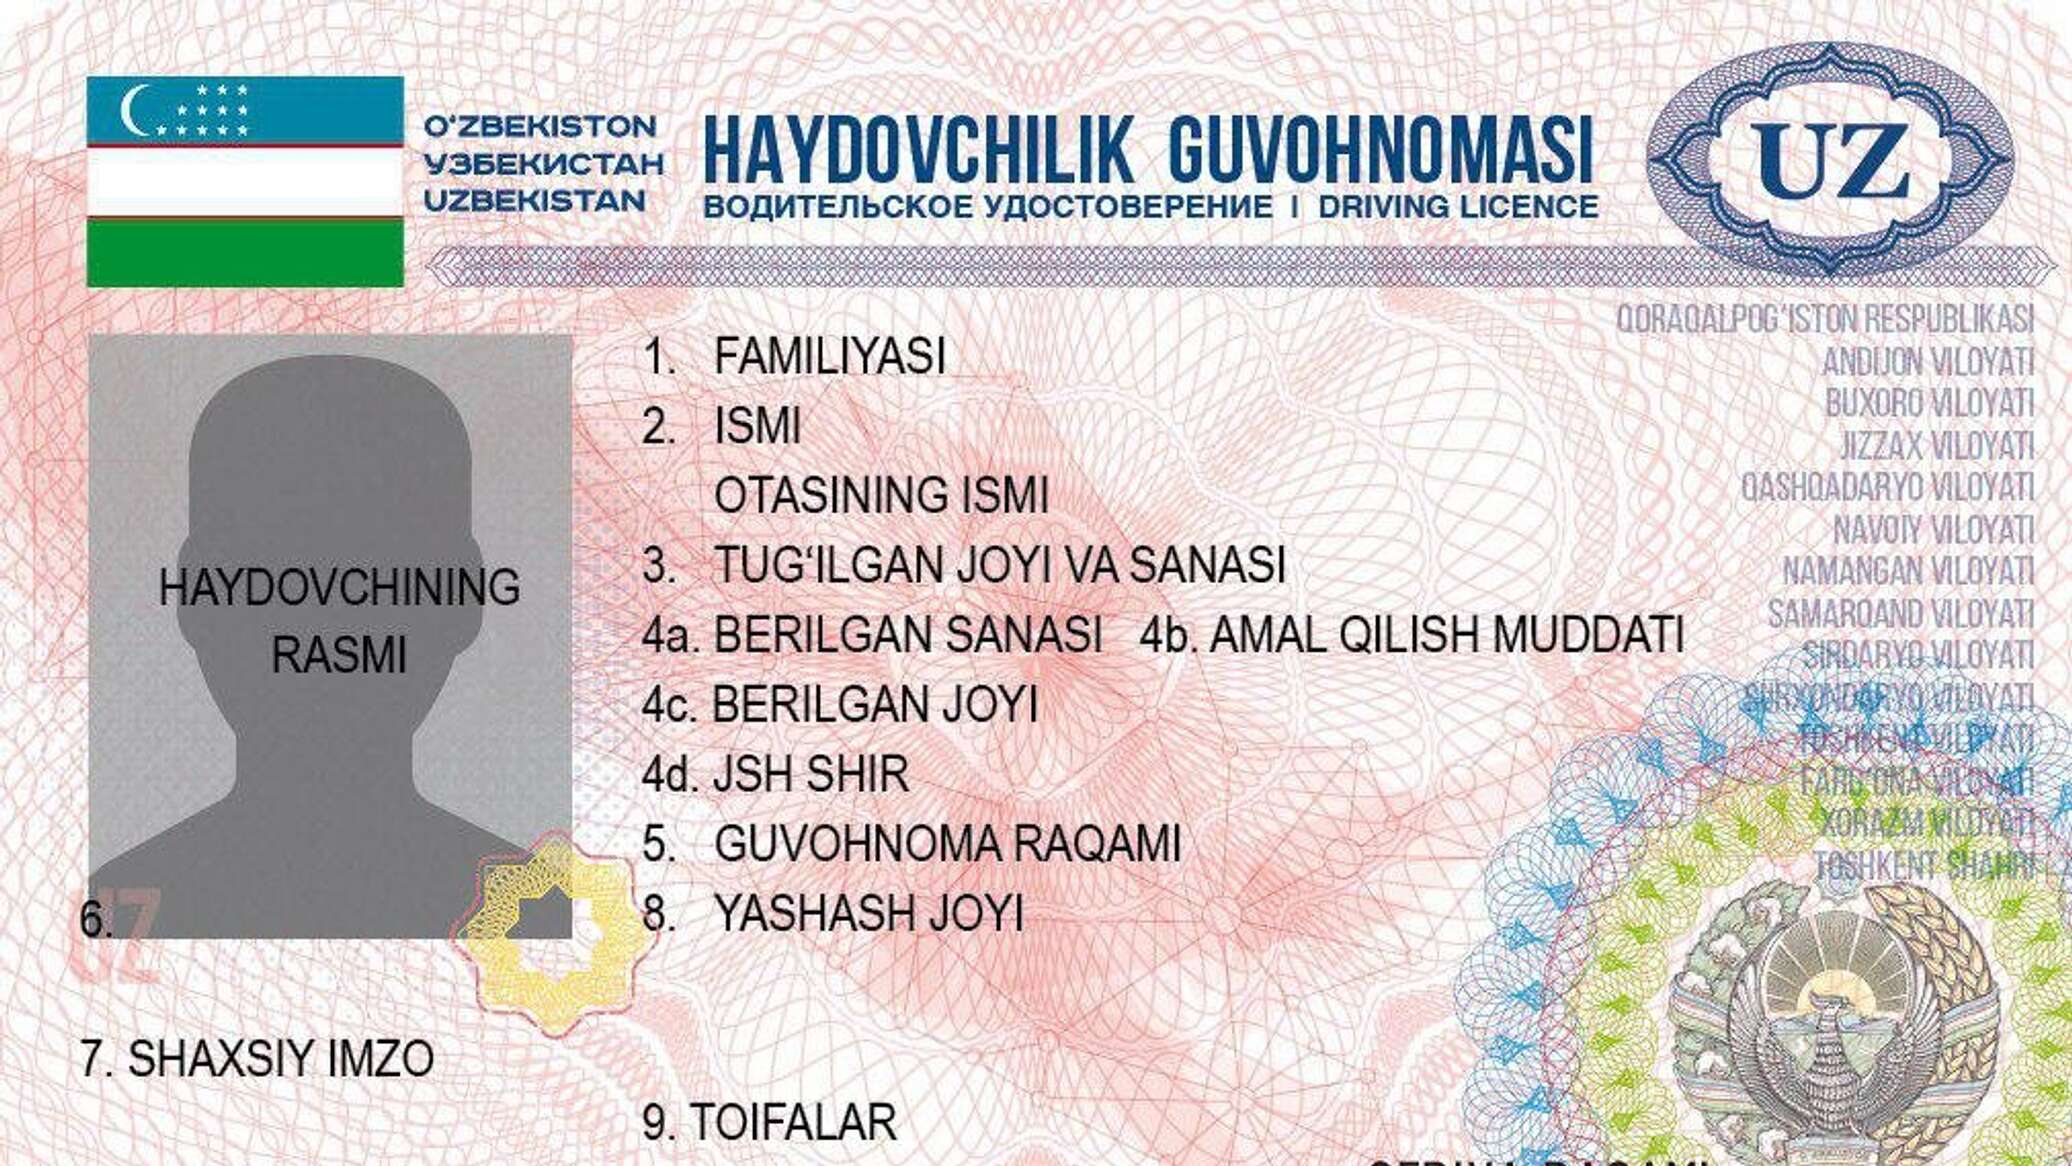 Порядок замены водительского удостоверения для иностранцев (граждан СНГ)